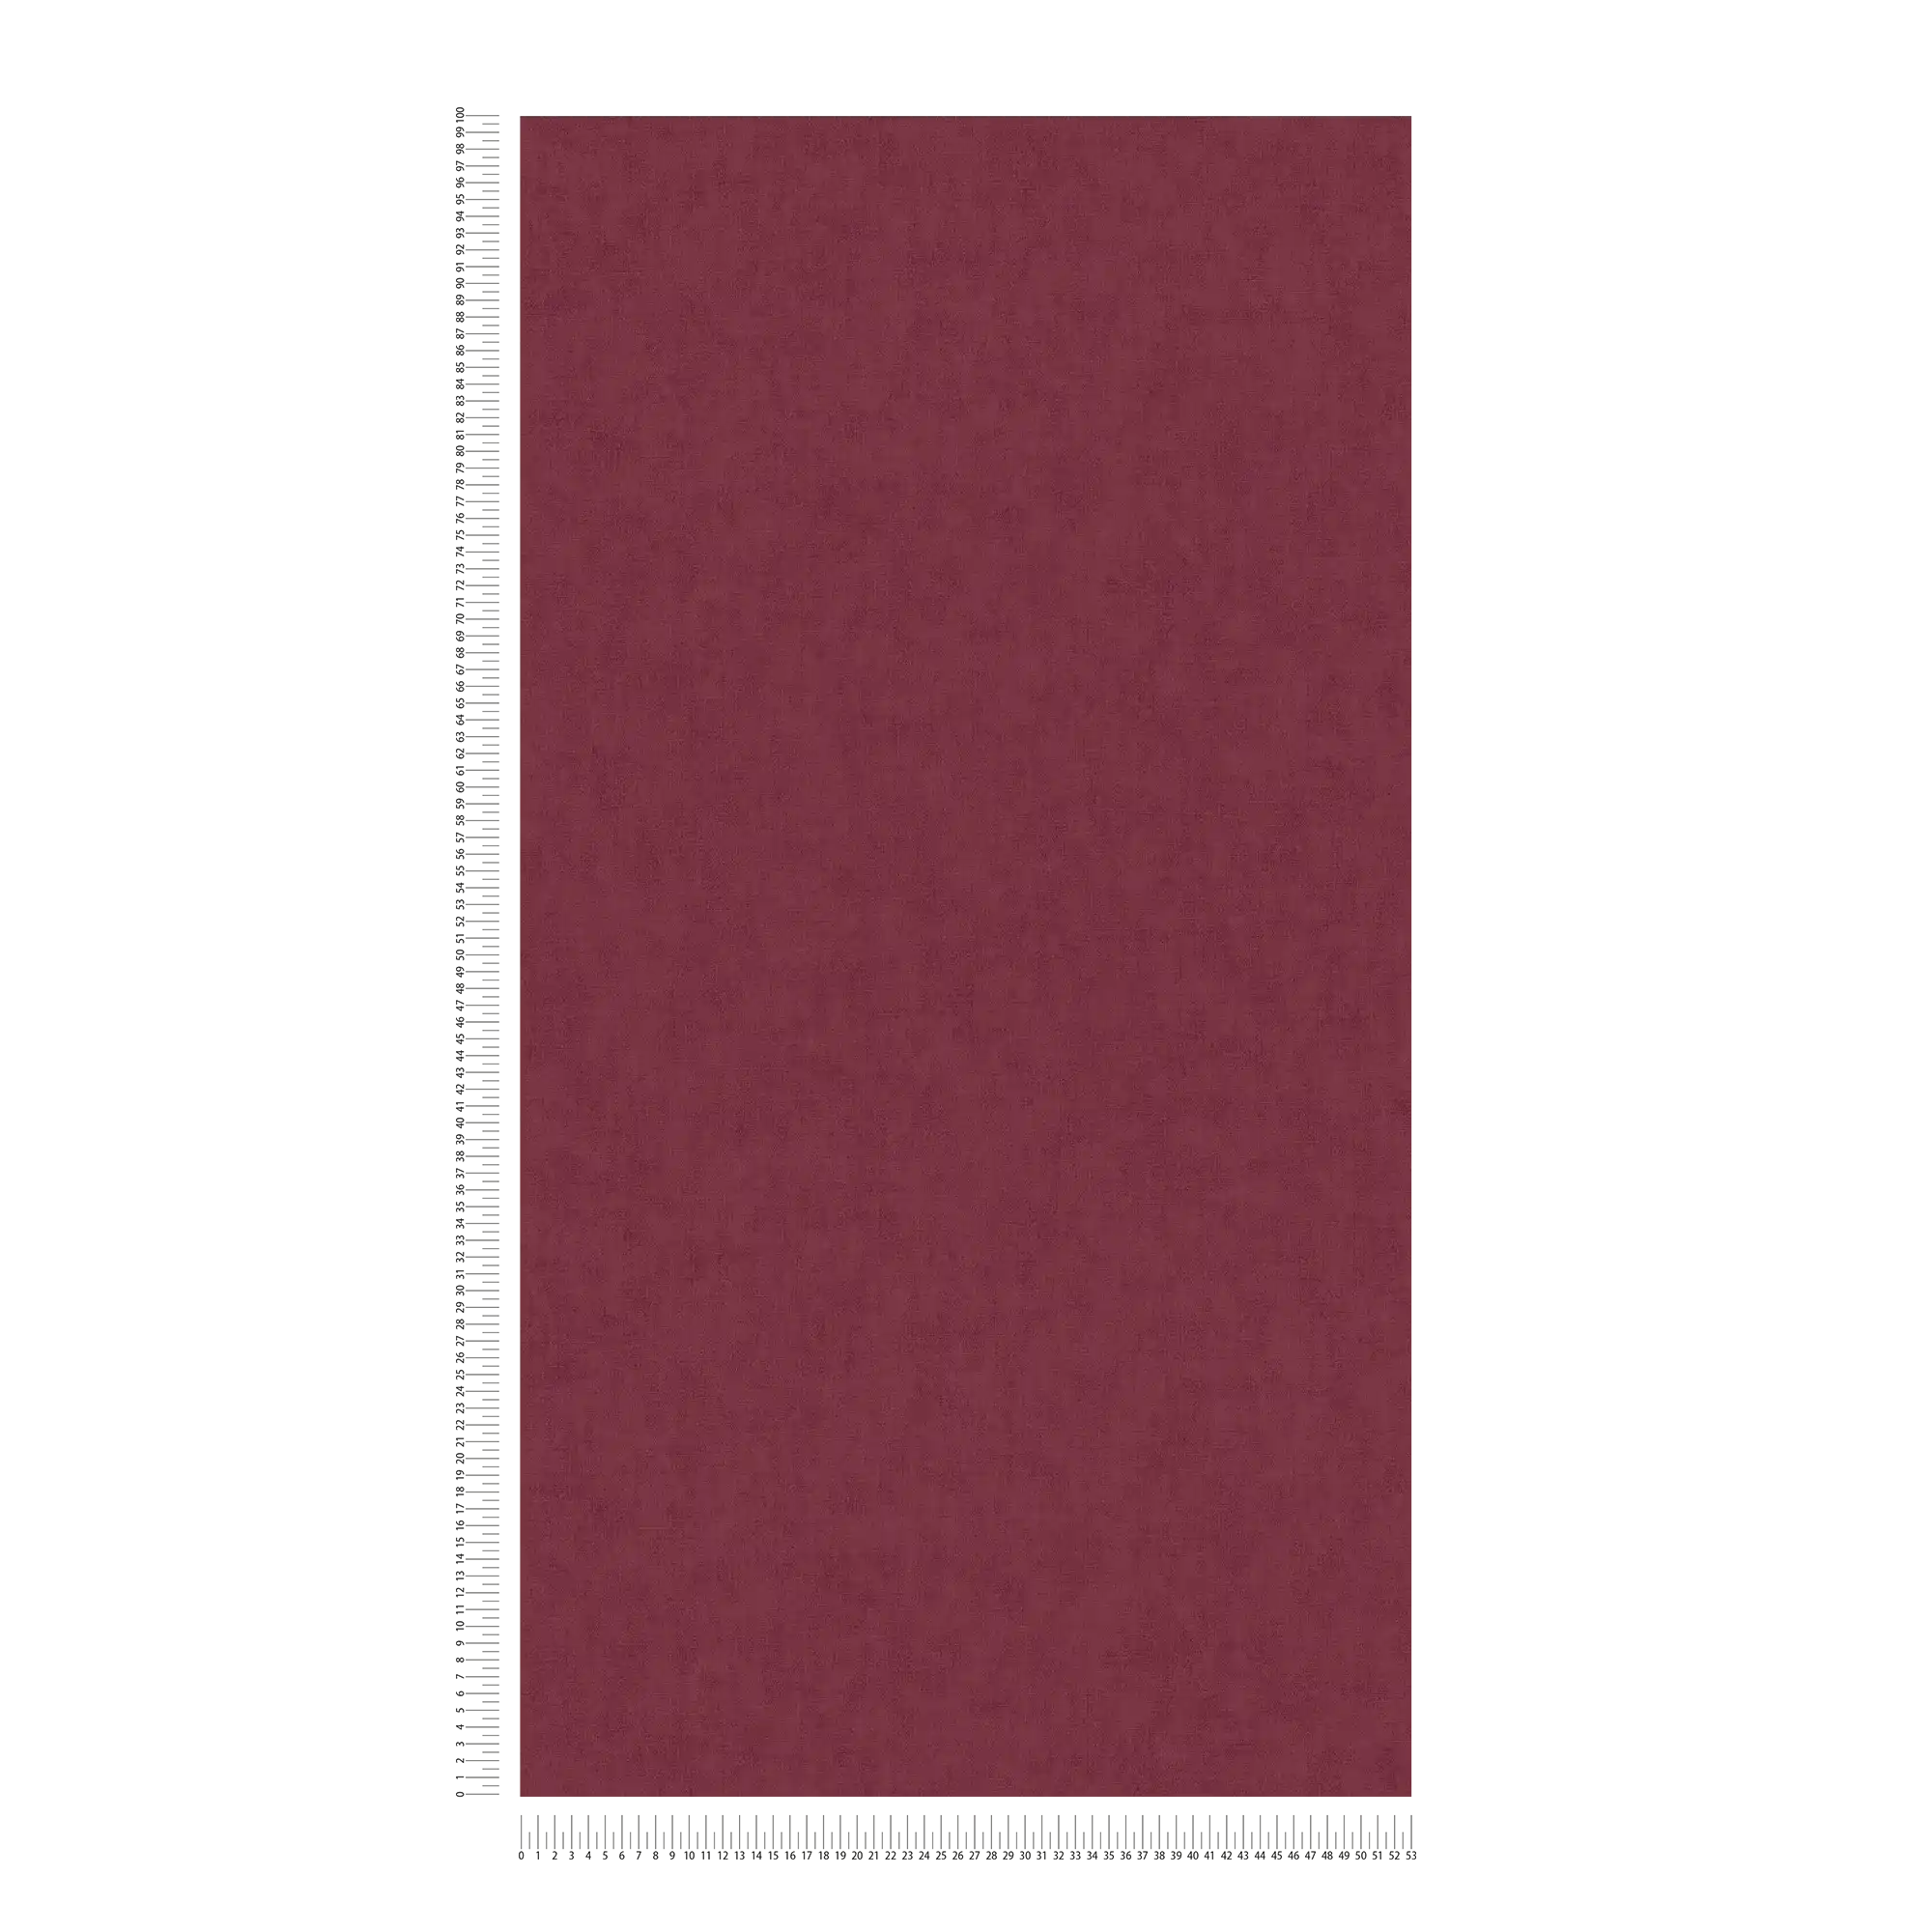             Carta da parati in tessuto non tessuto in stile scandinavo - rosso
        